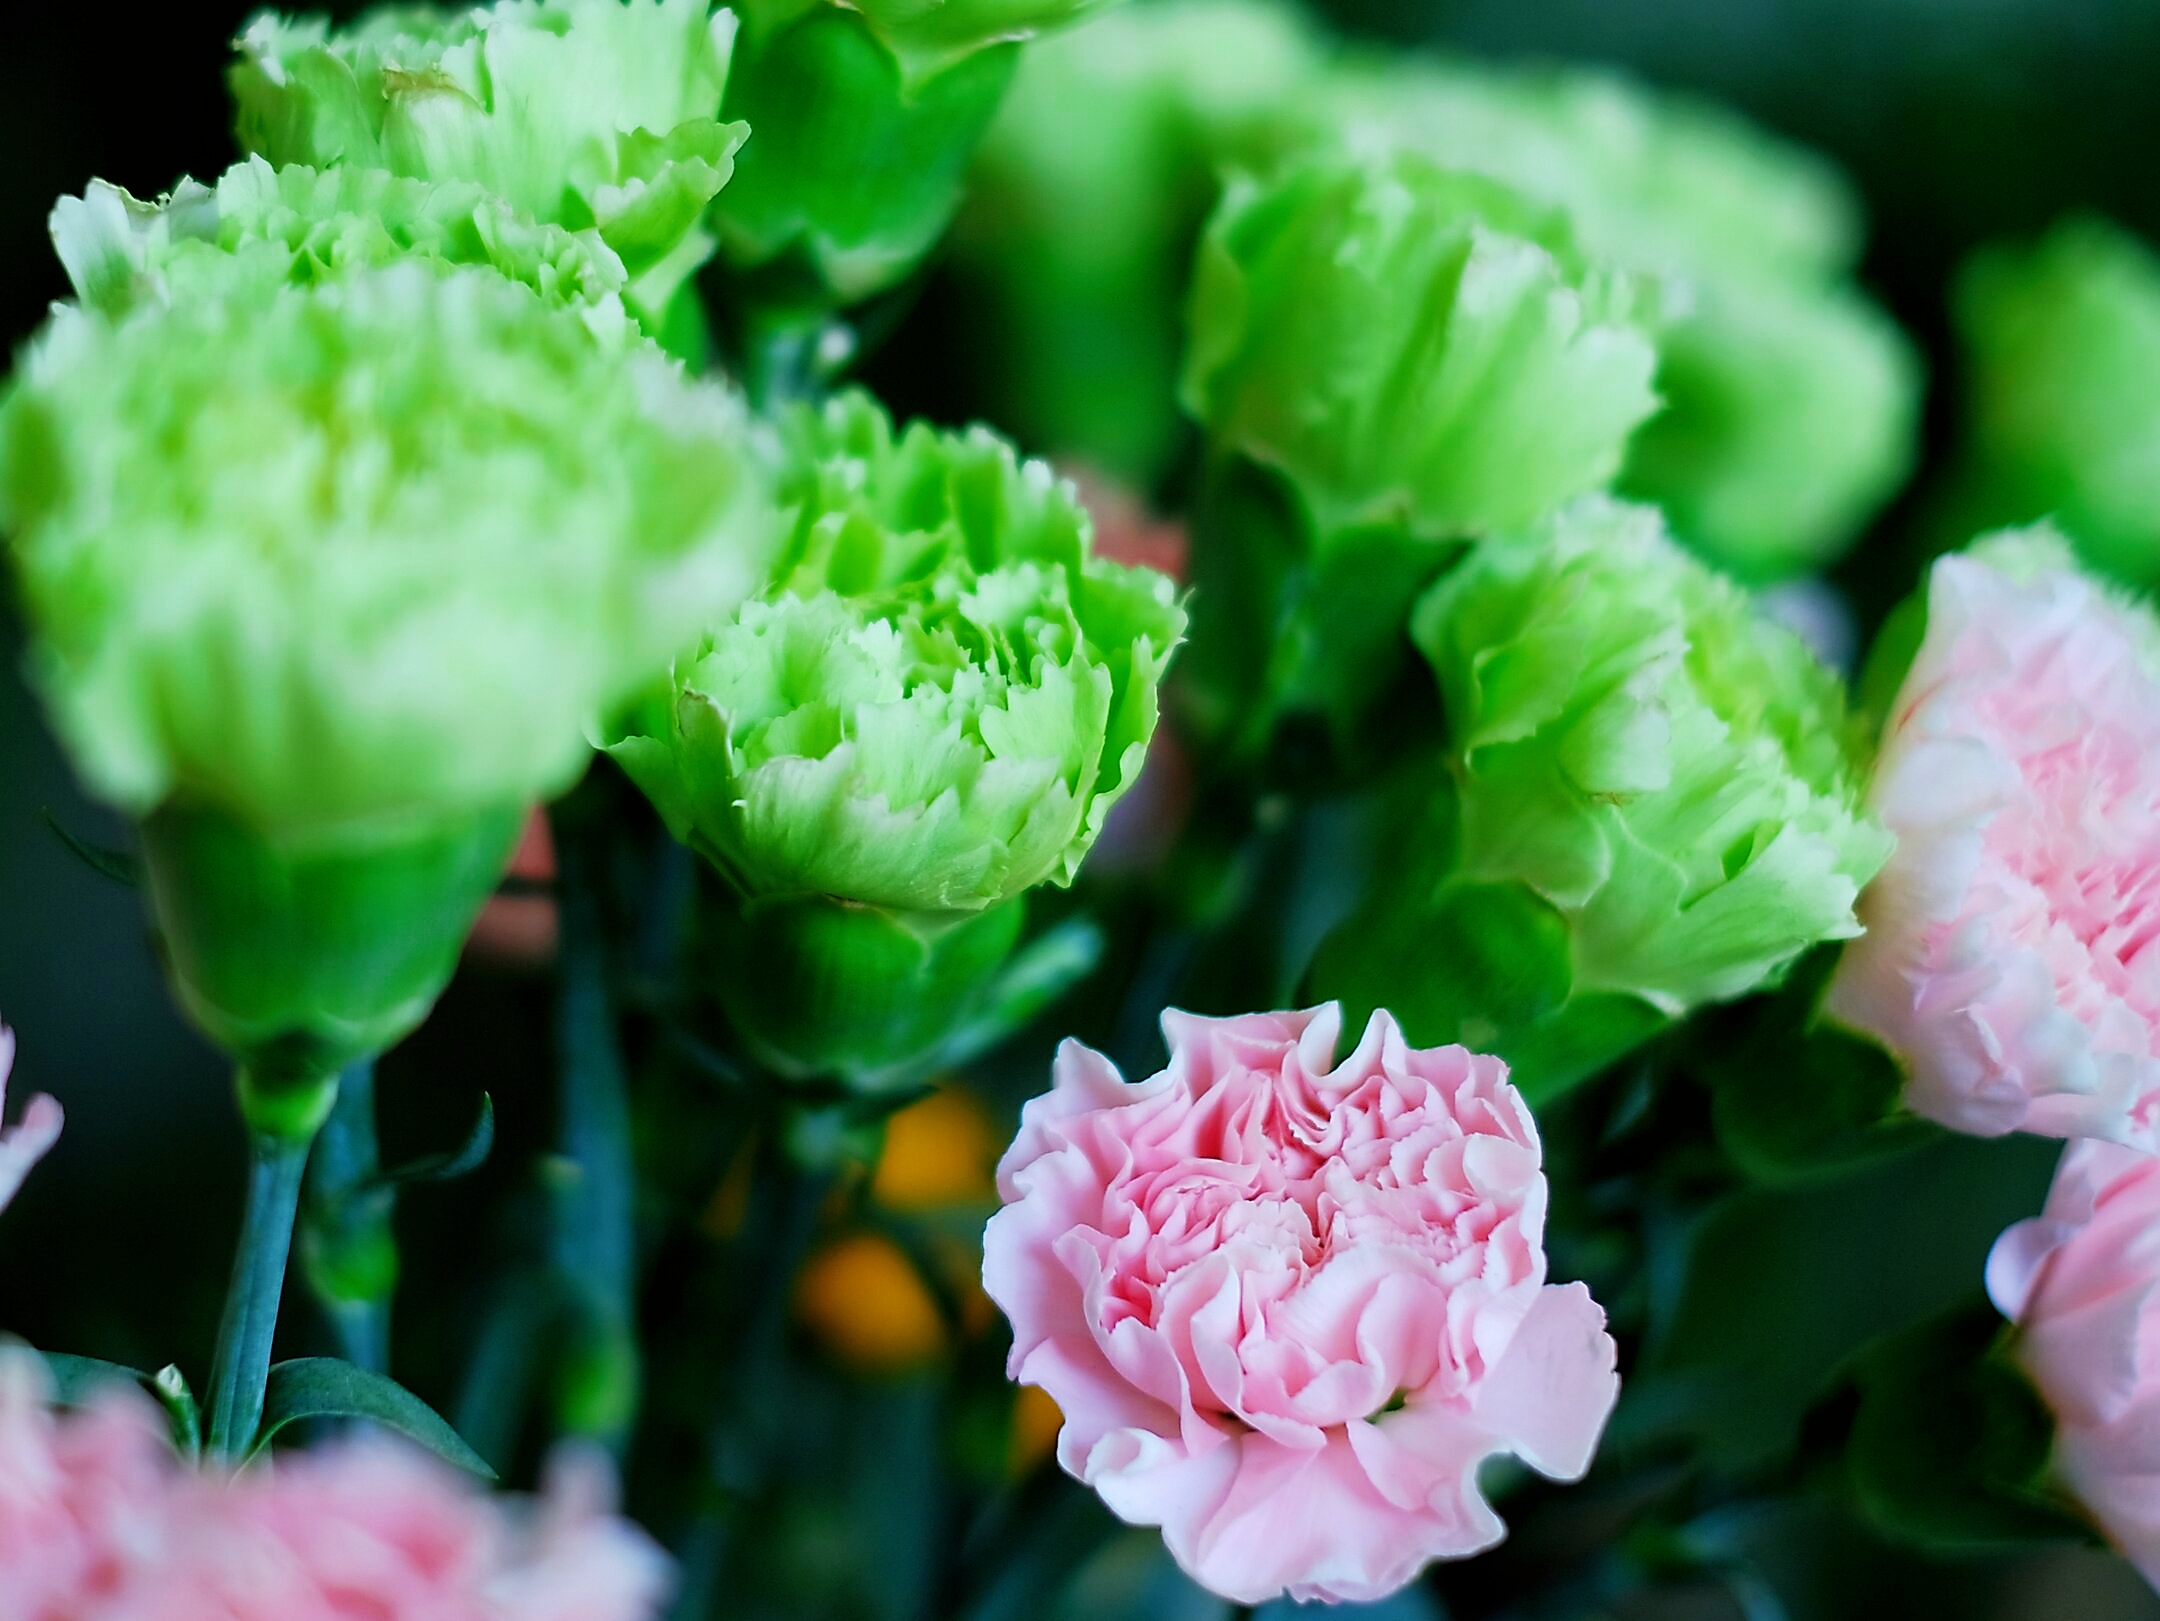 白色康乃馨的花语 是纯真的爱,真情,尊崇等; 粉色康乃馨的花语 是漂亮